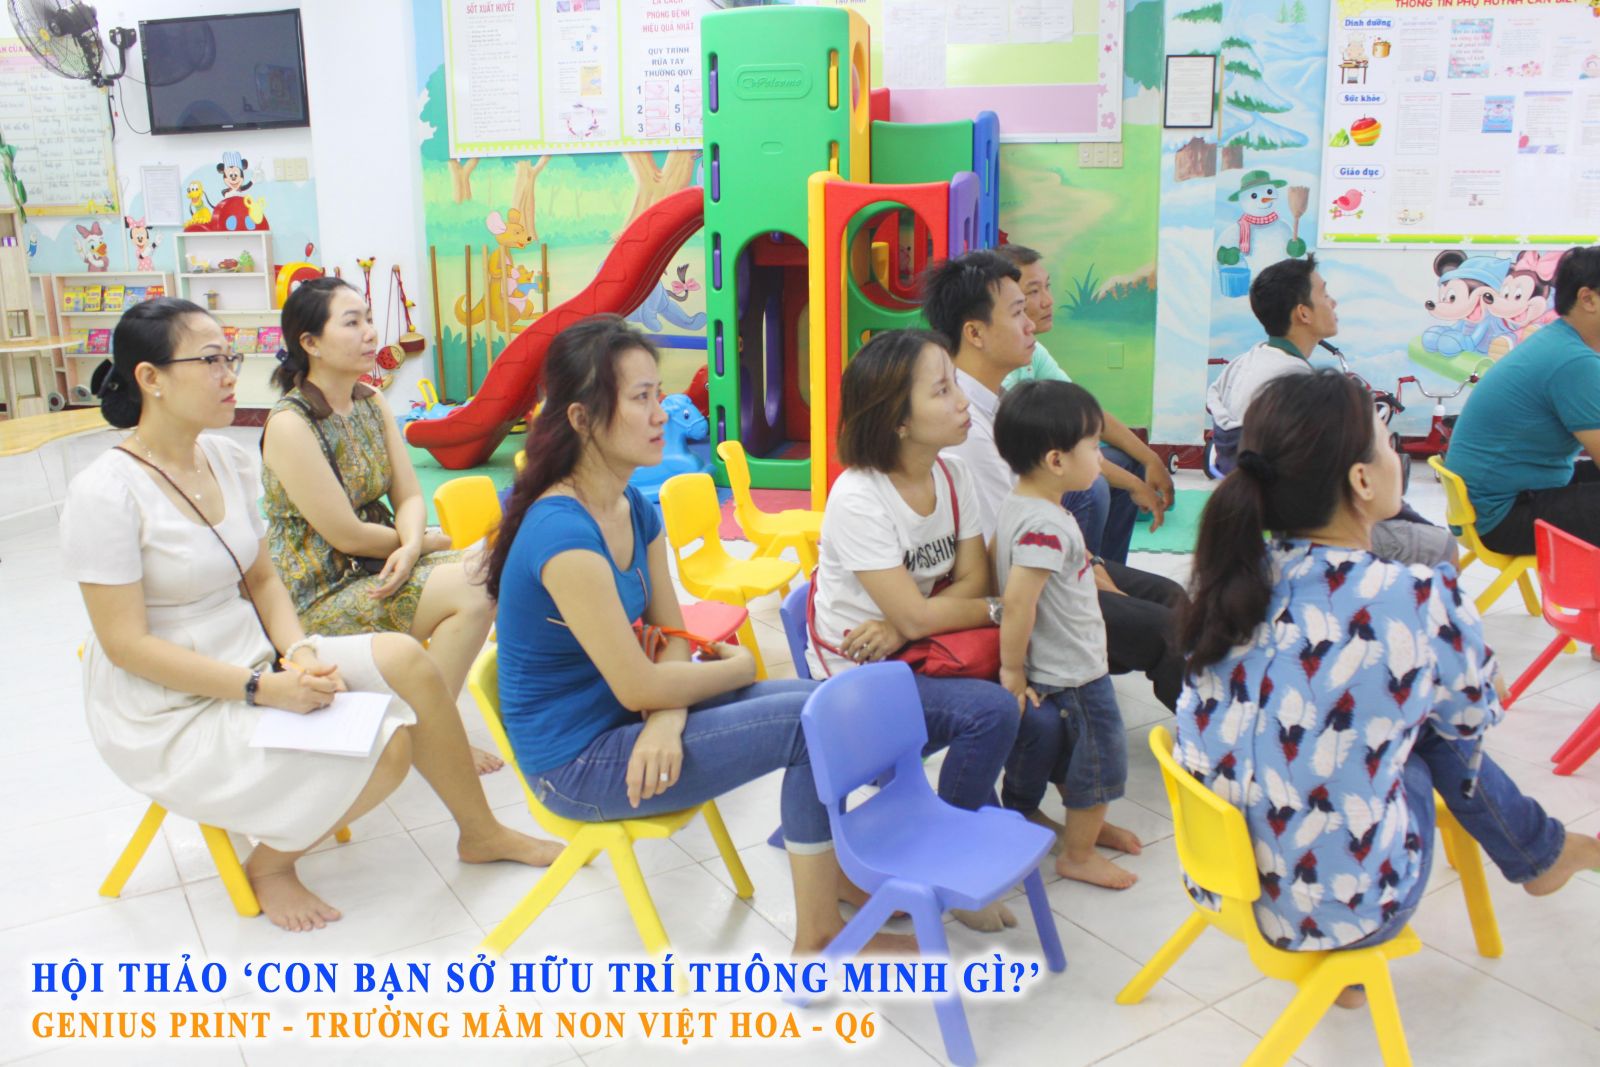 ....và phụ huynh các bé trường Mầm non Việt Hoa